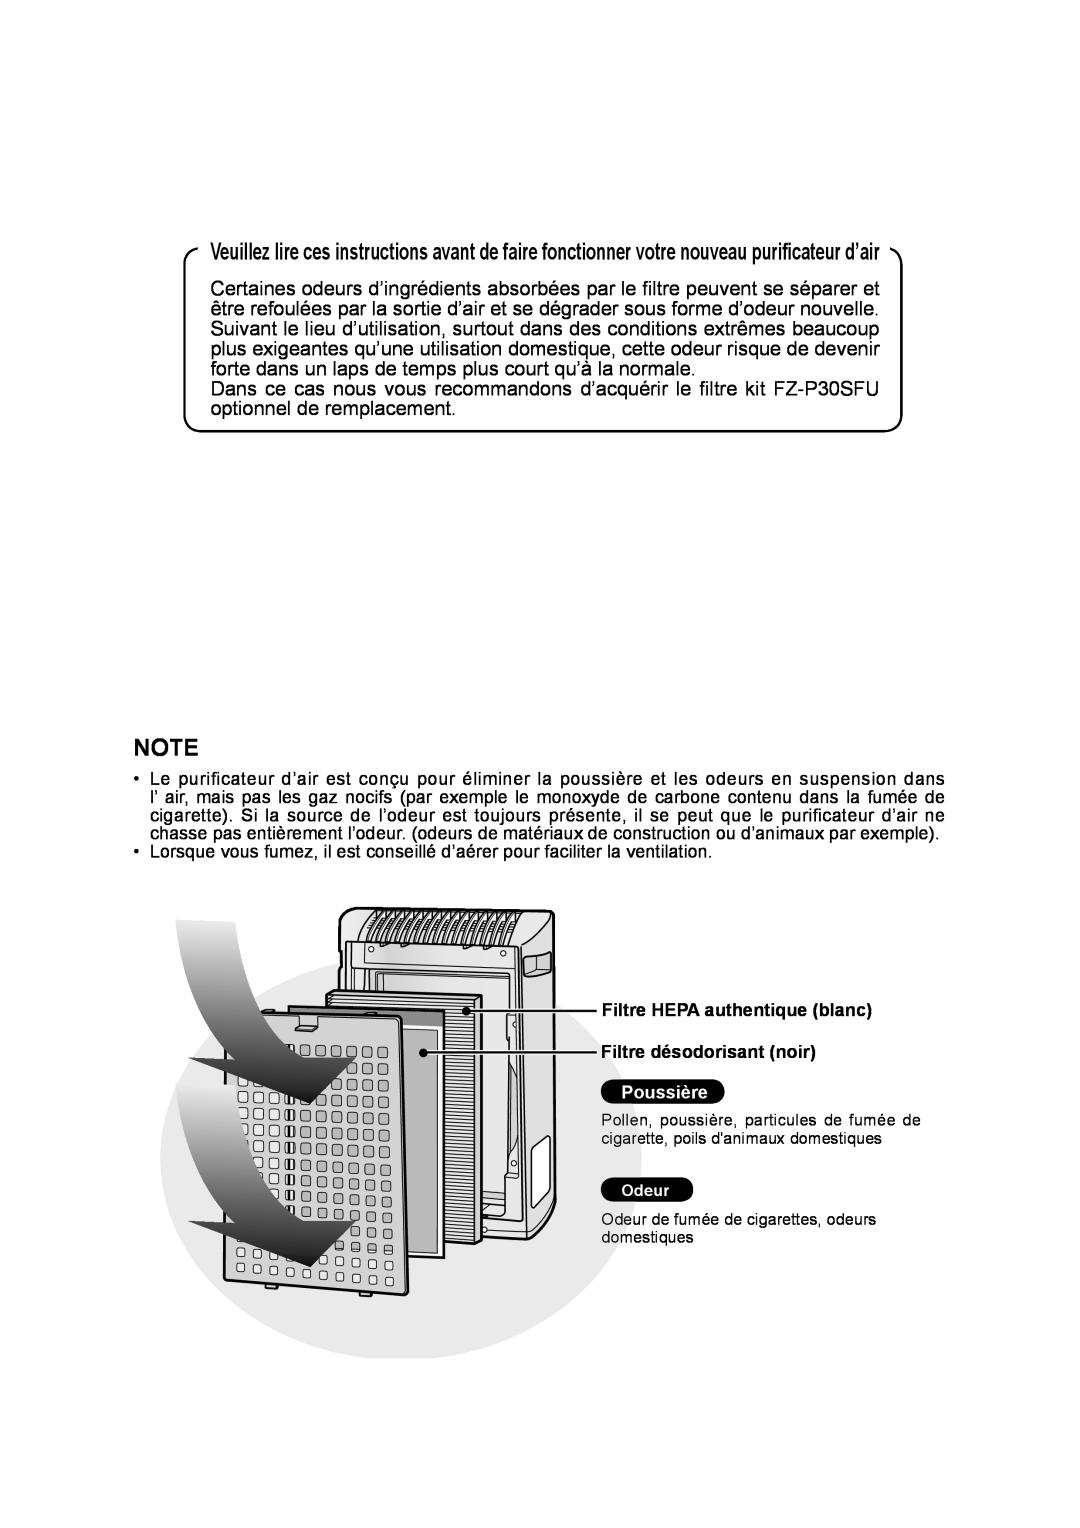 Sharp KC-830U operation manual Filtre HEPA authentique blanc, Filtre désodorisant noir, Poussière 